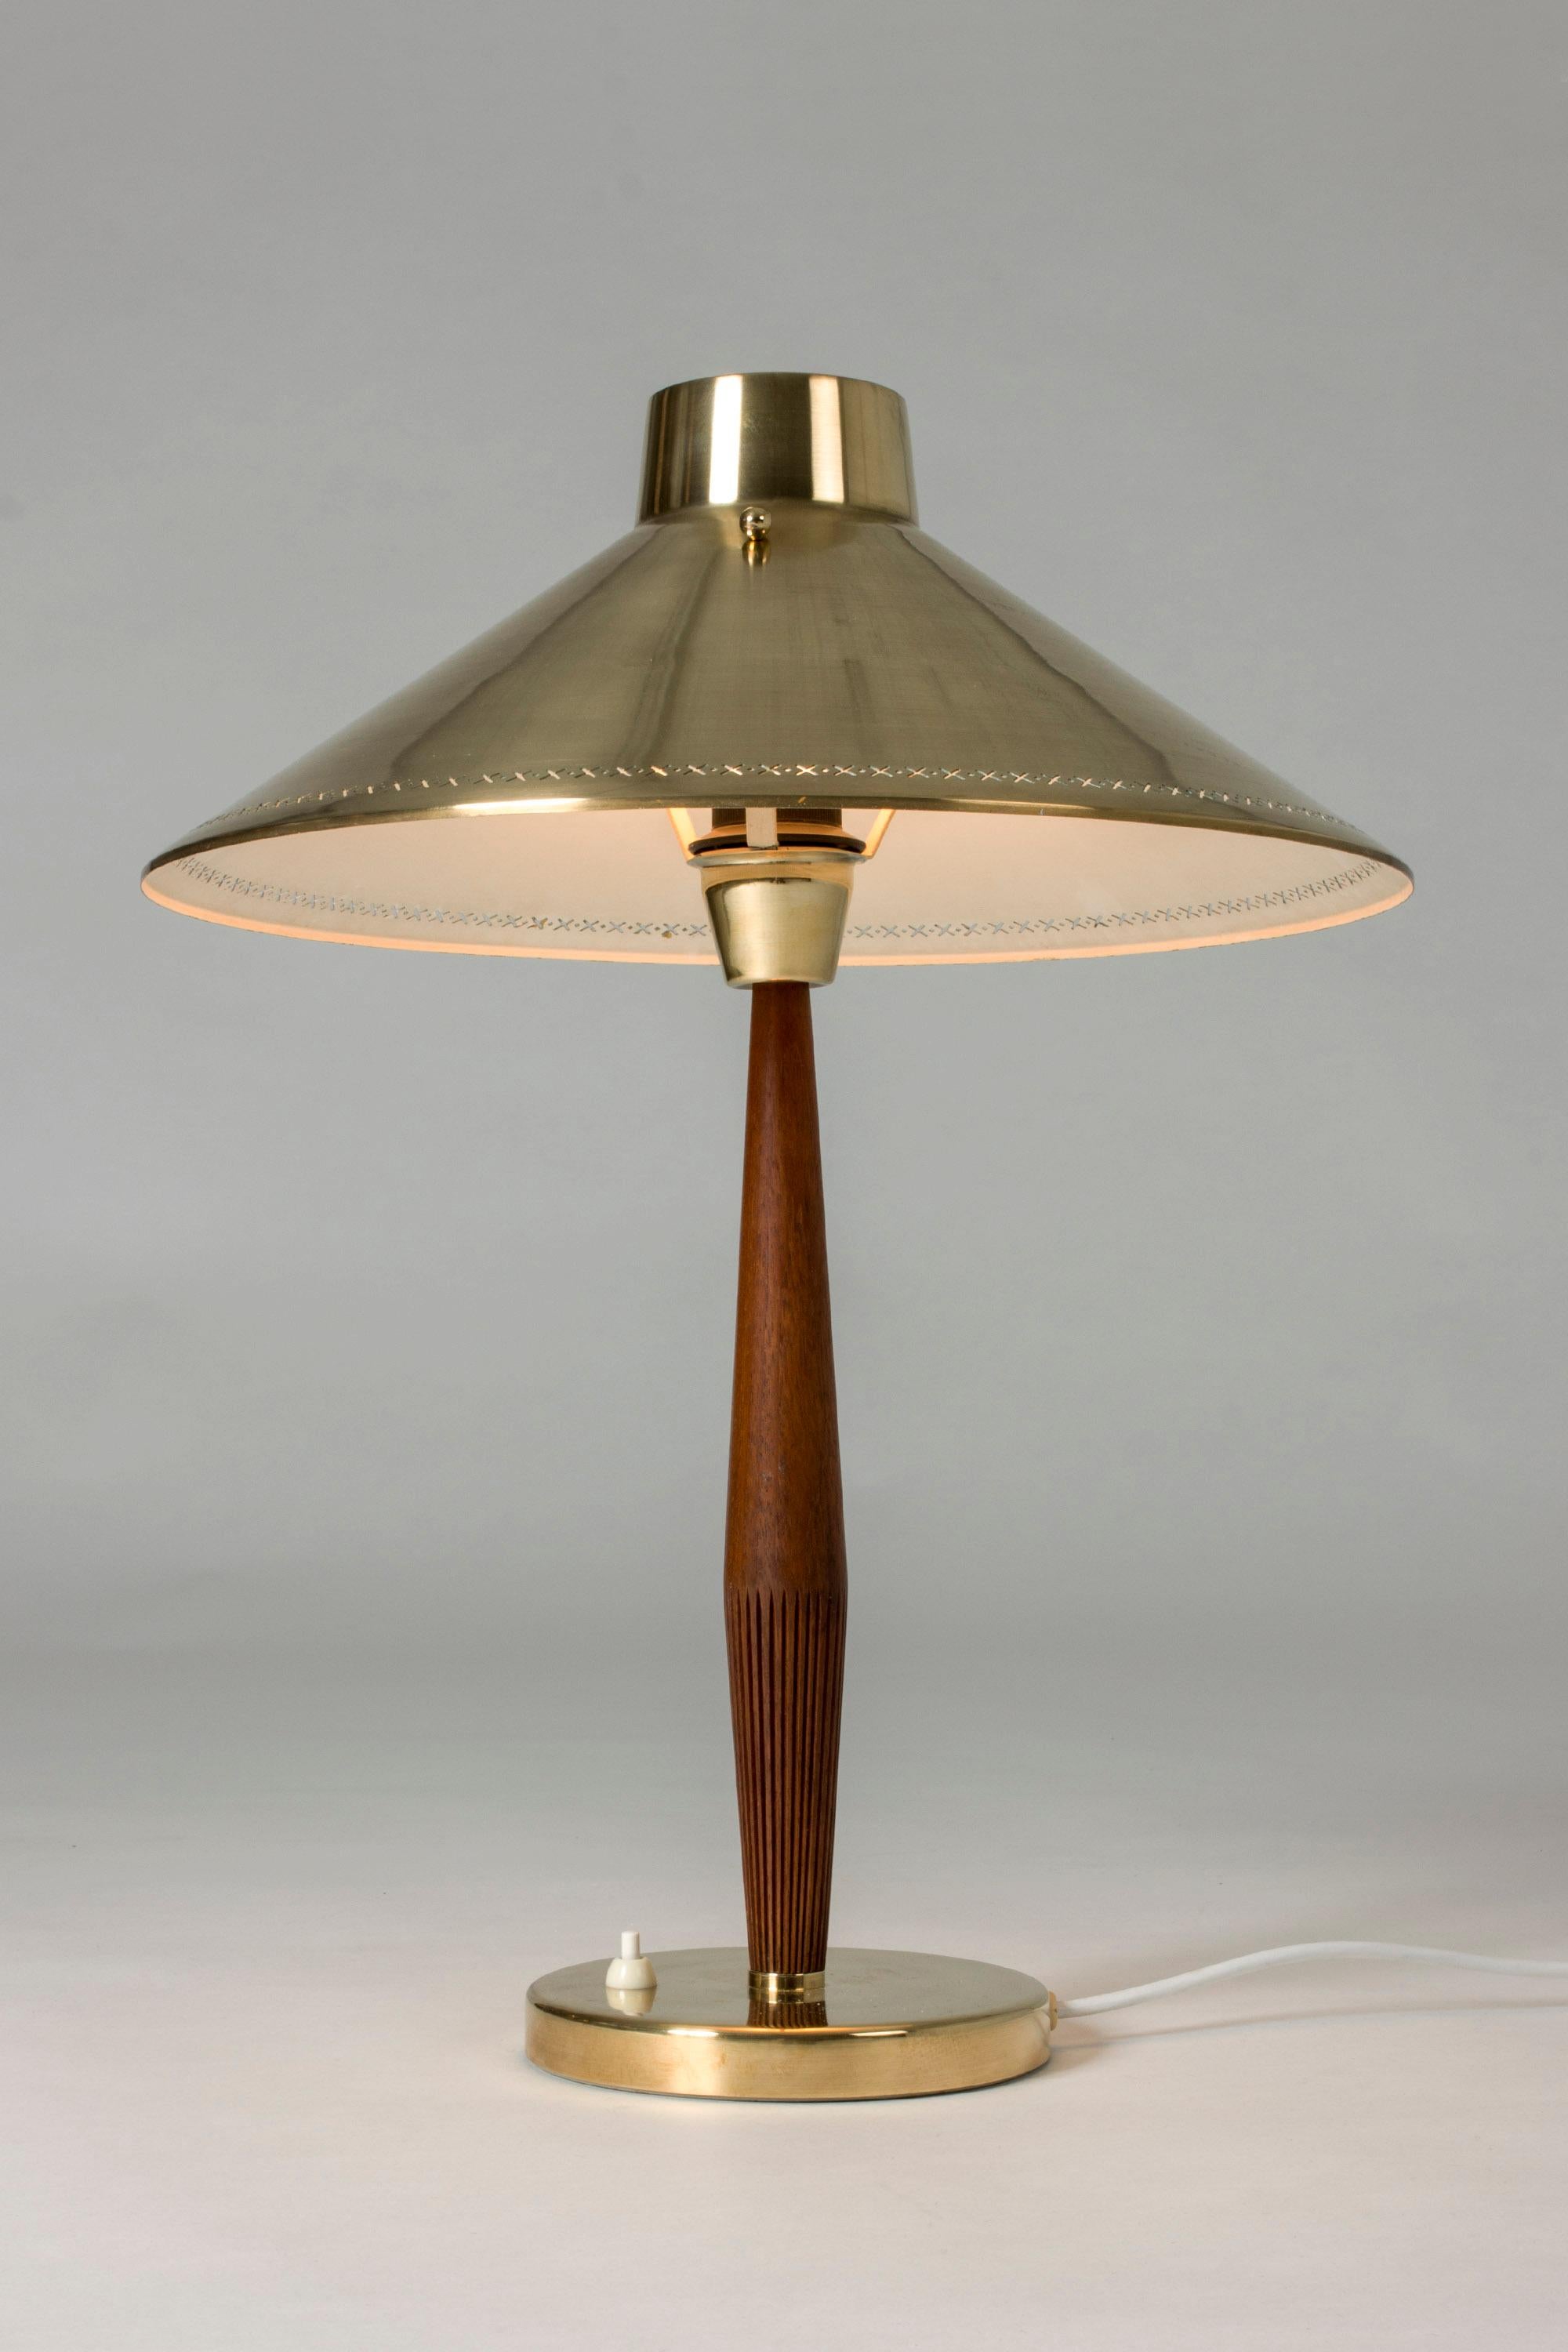 Scandinavian Modern Brass and Teak Table Lamp by Hans Bergström